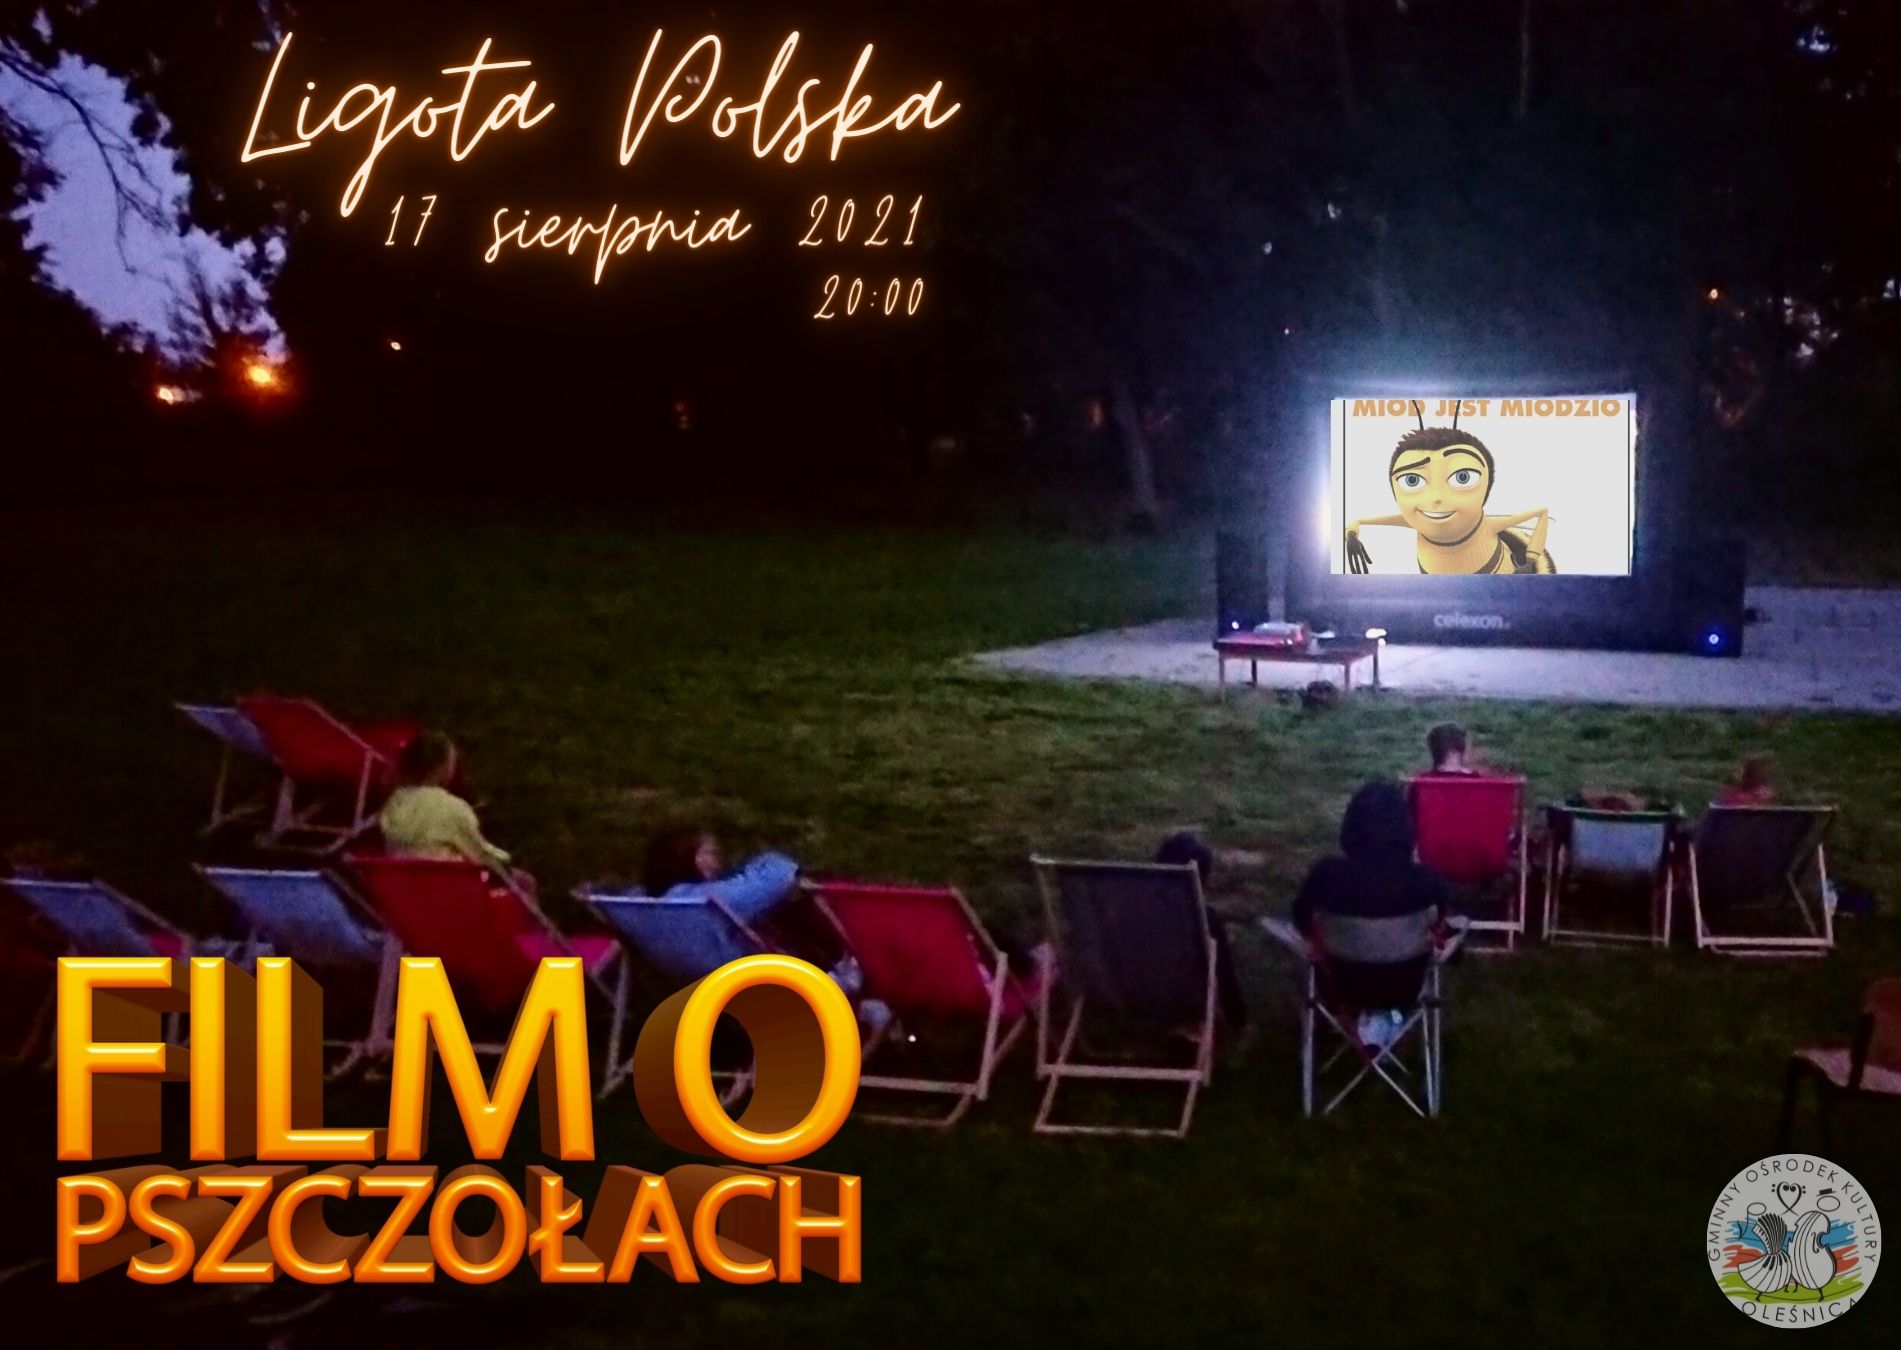 Kino Plenerowe - Ligota Polska